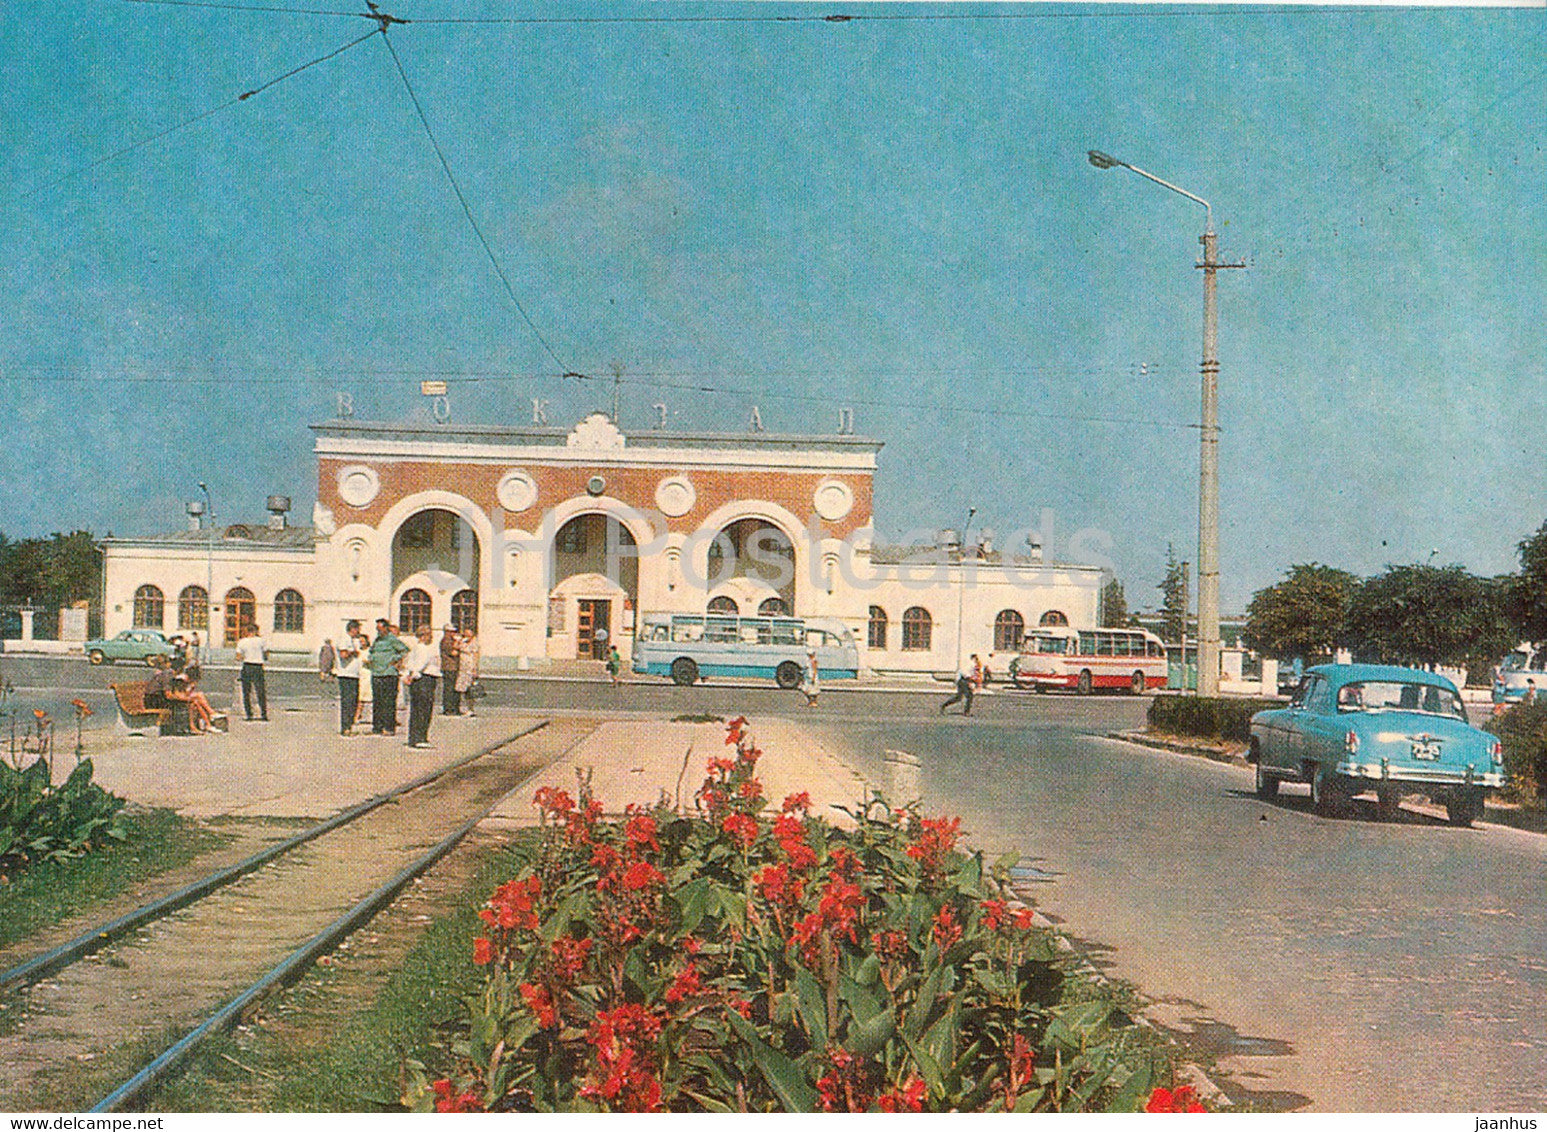 Yevpatoriya - Evpatoria - Railway station - bus - car Volga - Crimea - 1971 - Ukraine USSR - unused - JH Postcards